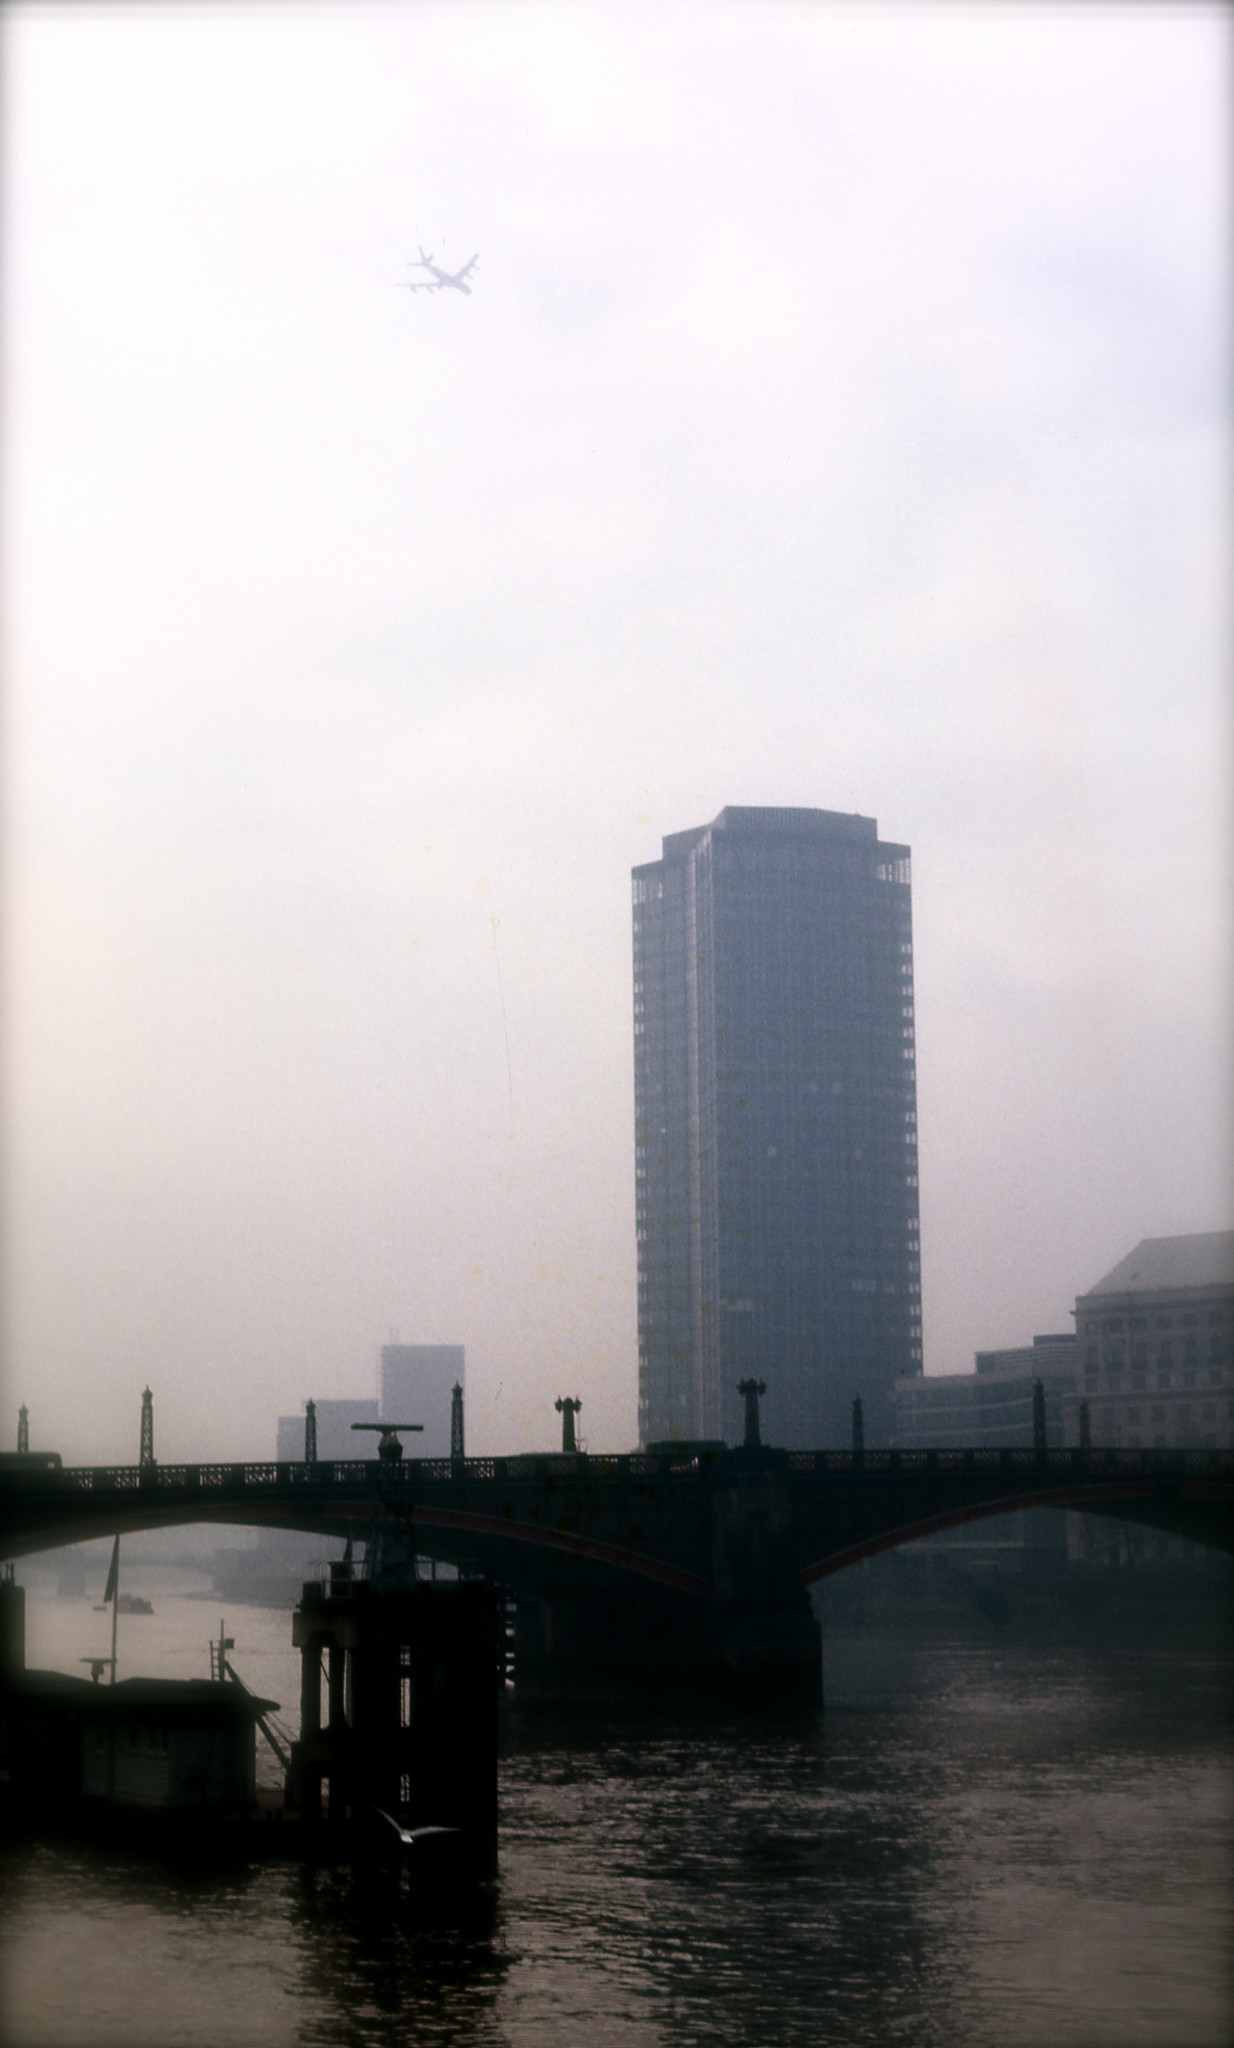 London, 1971